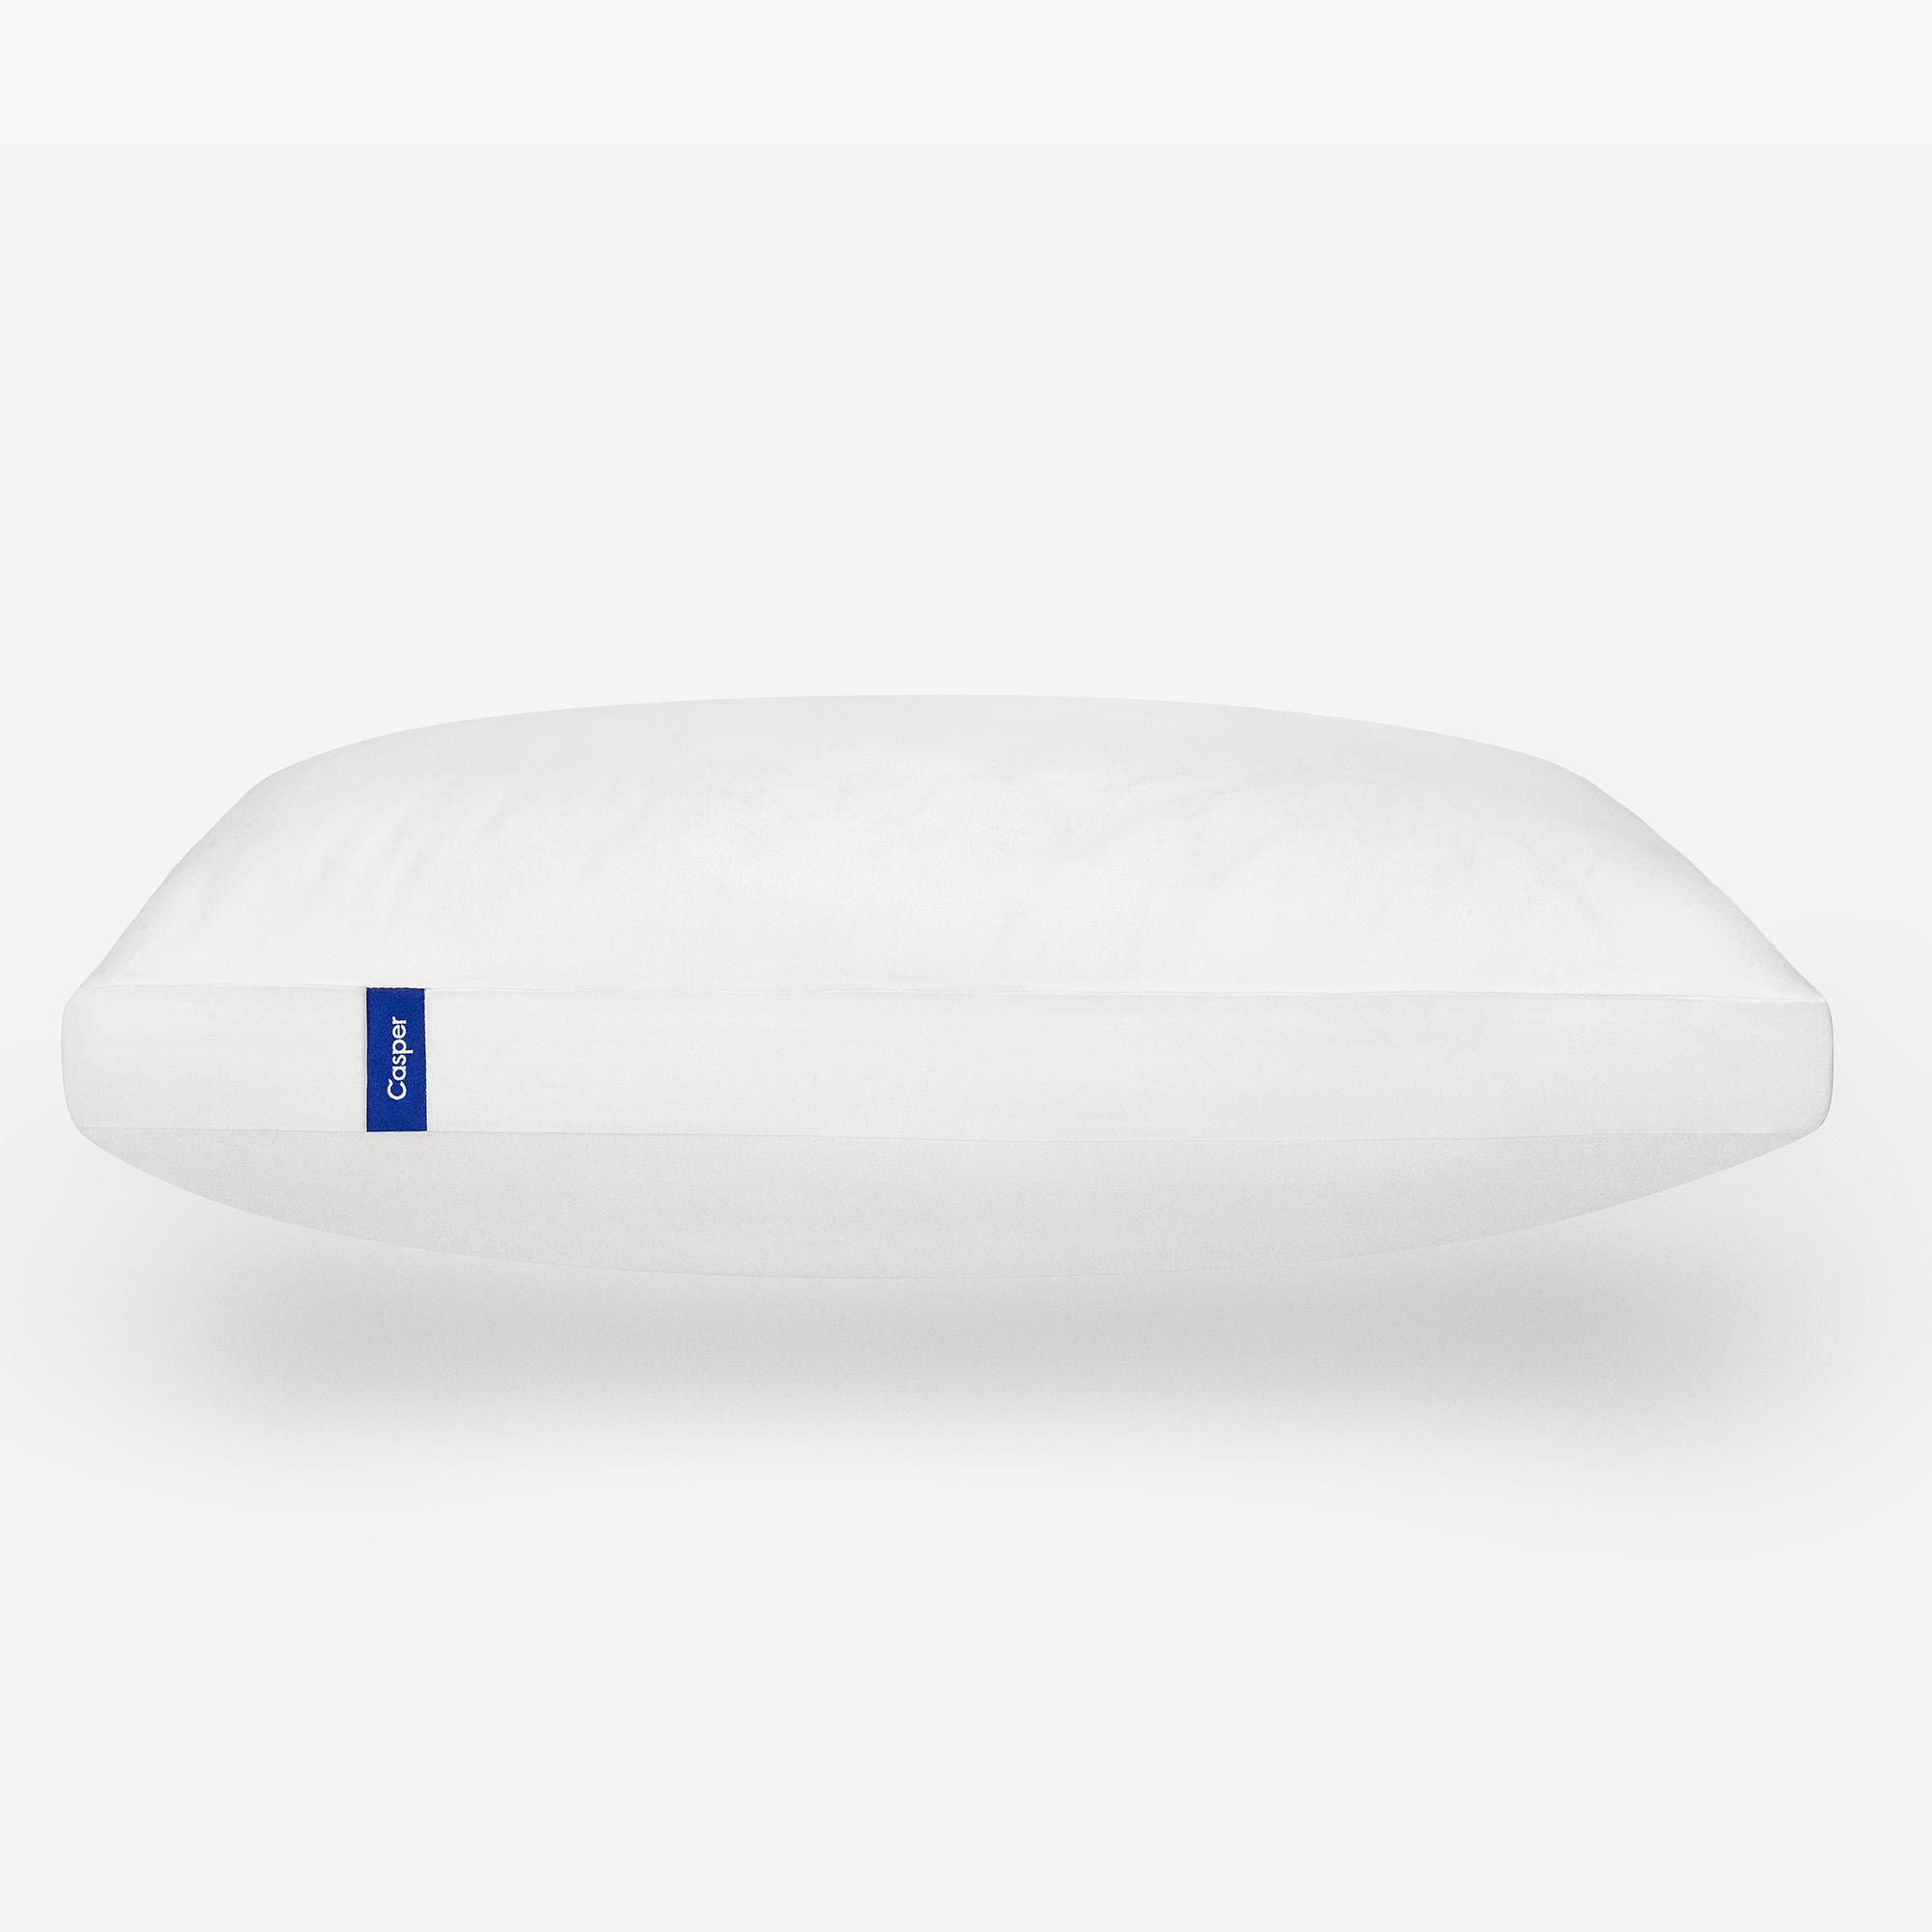 Casper Supportive, Cool, & Comfortable Bed Pillow - Standard | Casper Sleep Inc